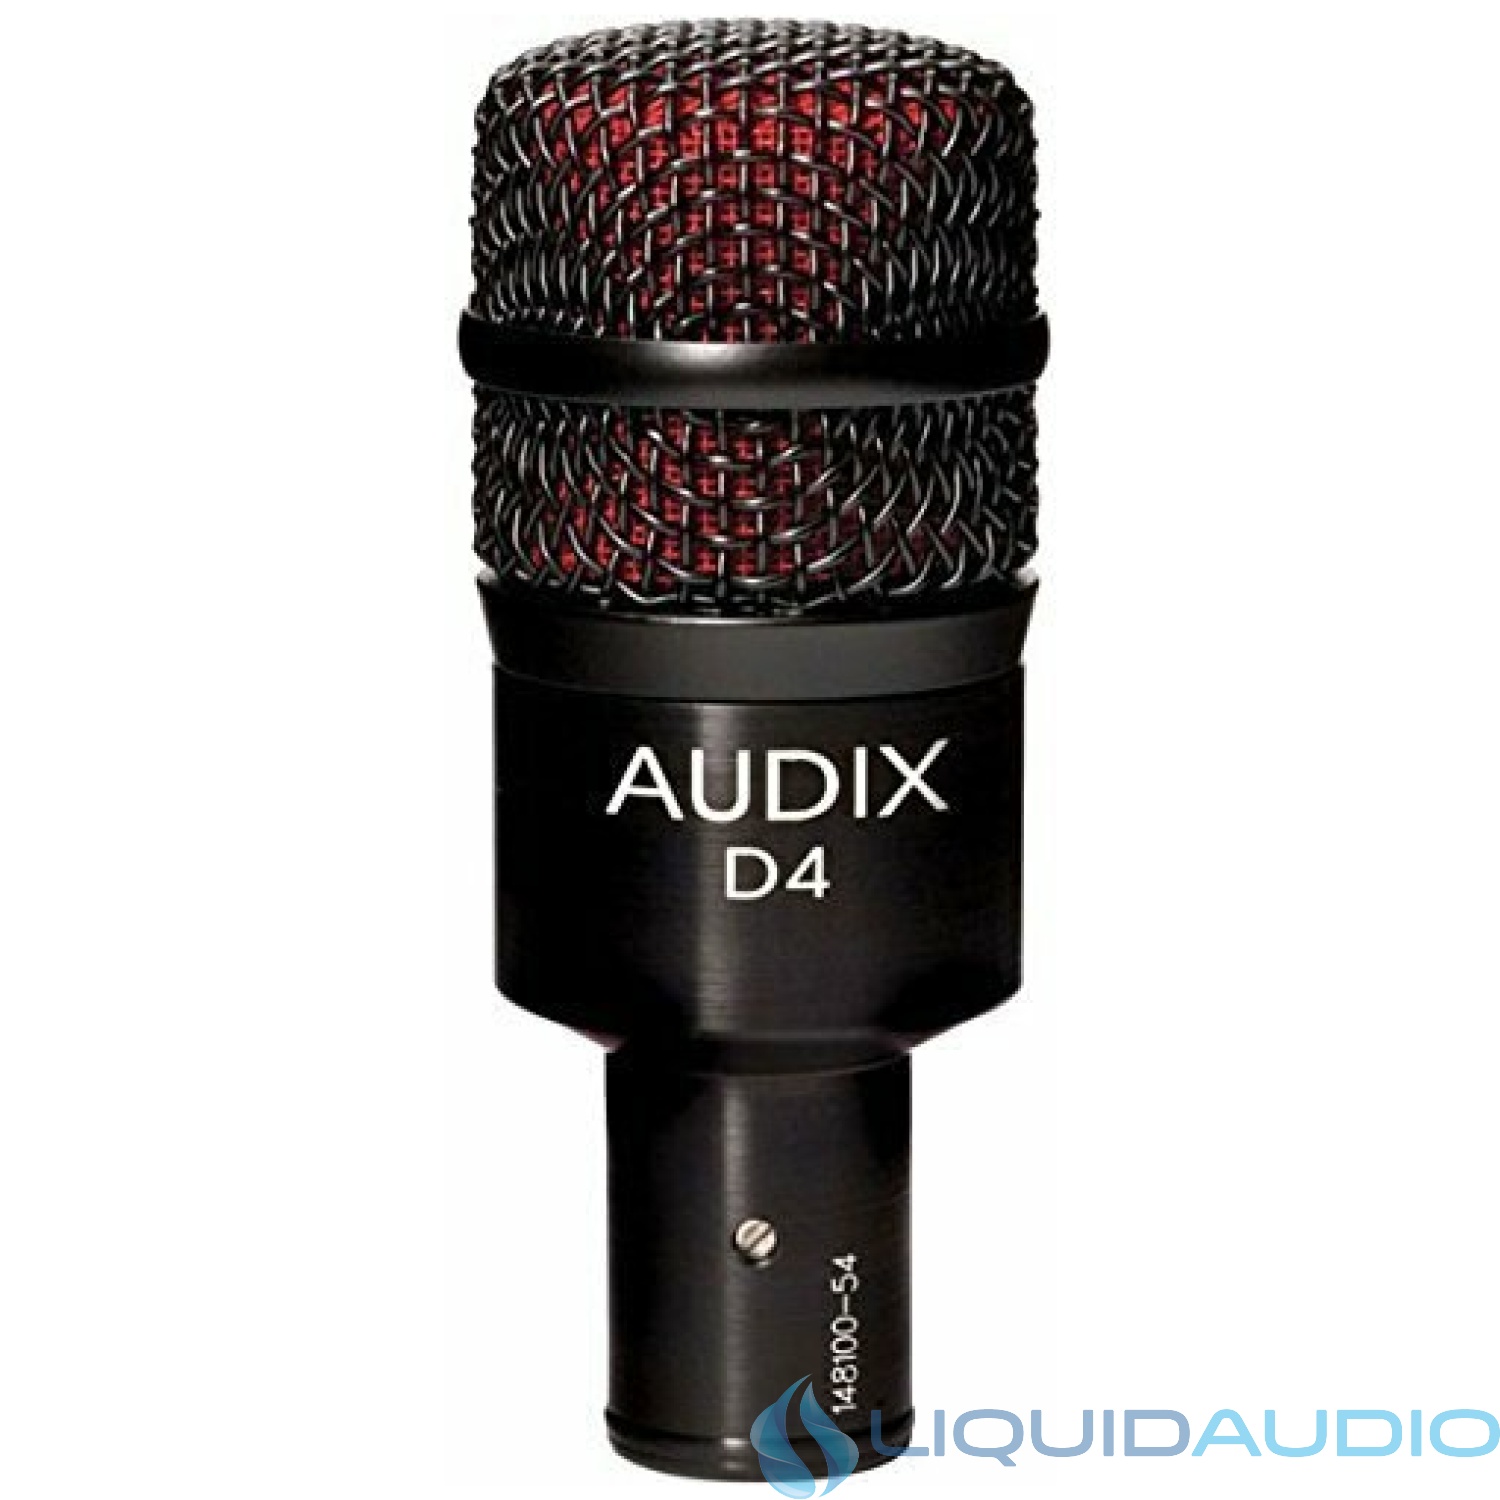 Audix D4 Dynamic Microphone, Hyper-Cardioid